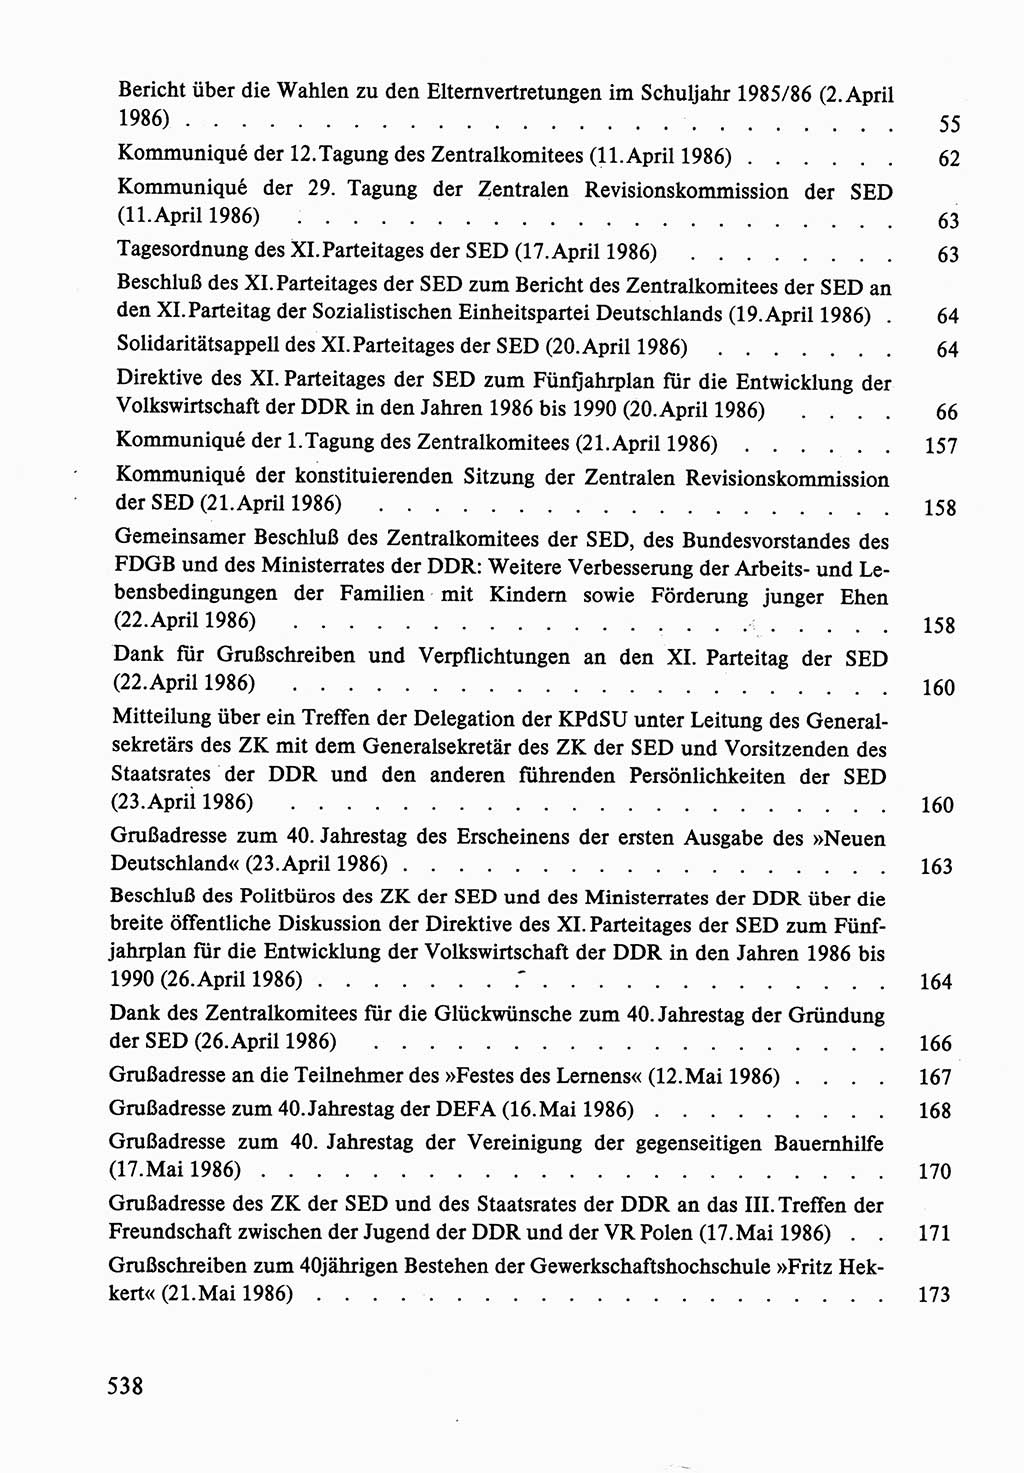 Dokumente der Sozialistischen Einheitspartei Deutschlands (SED) [Deutsche Demokratische Republik (DDR)] 1986-1987, Seite 538 (Dok. SED DDR 1986-1987, S. 538)